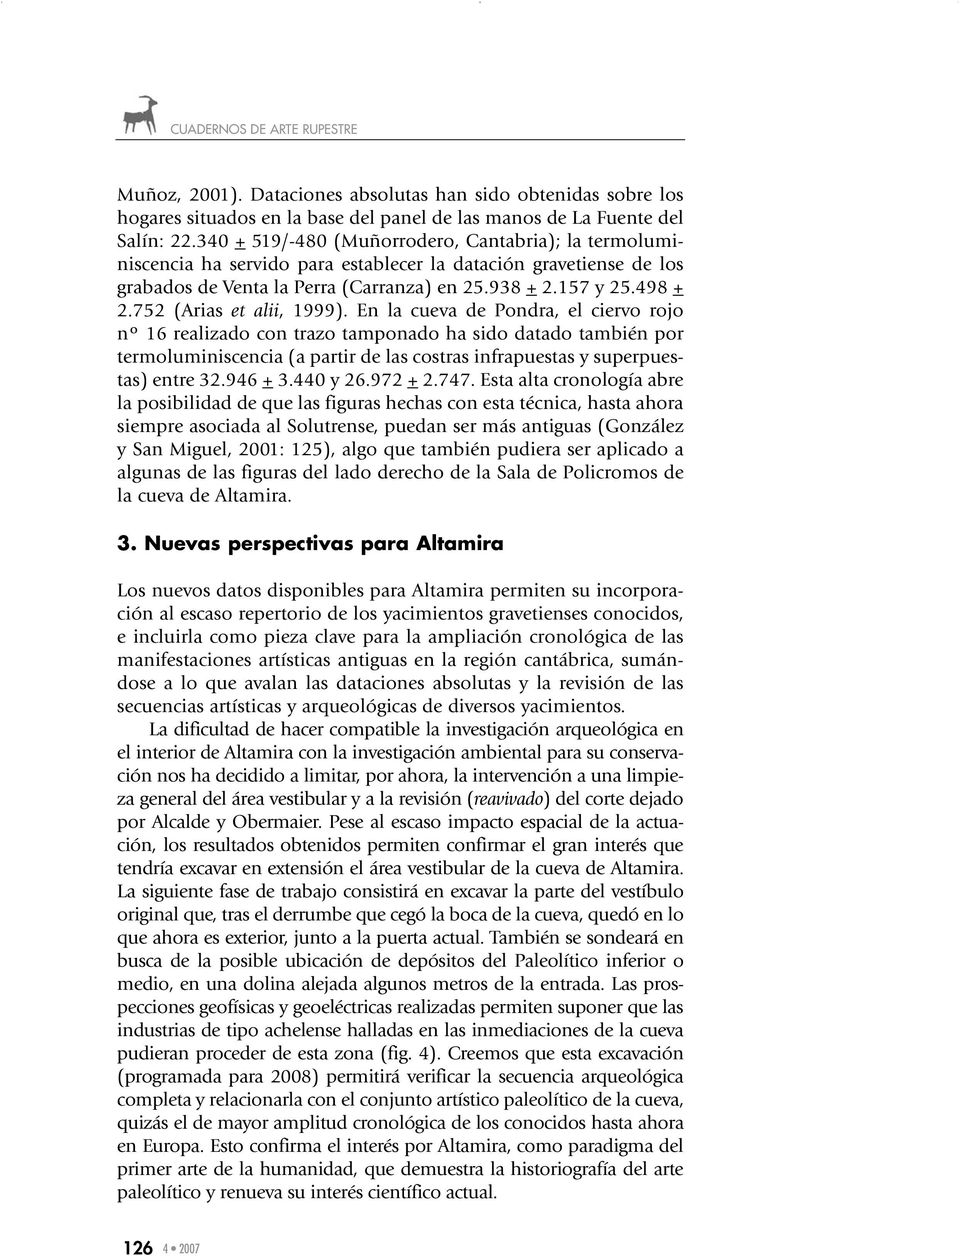 752 (Arias et alii, 1999).